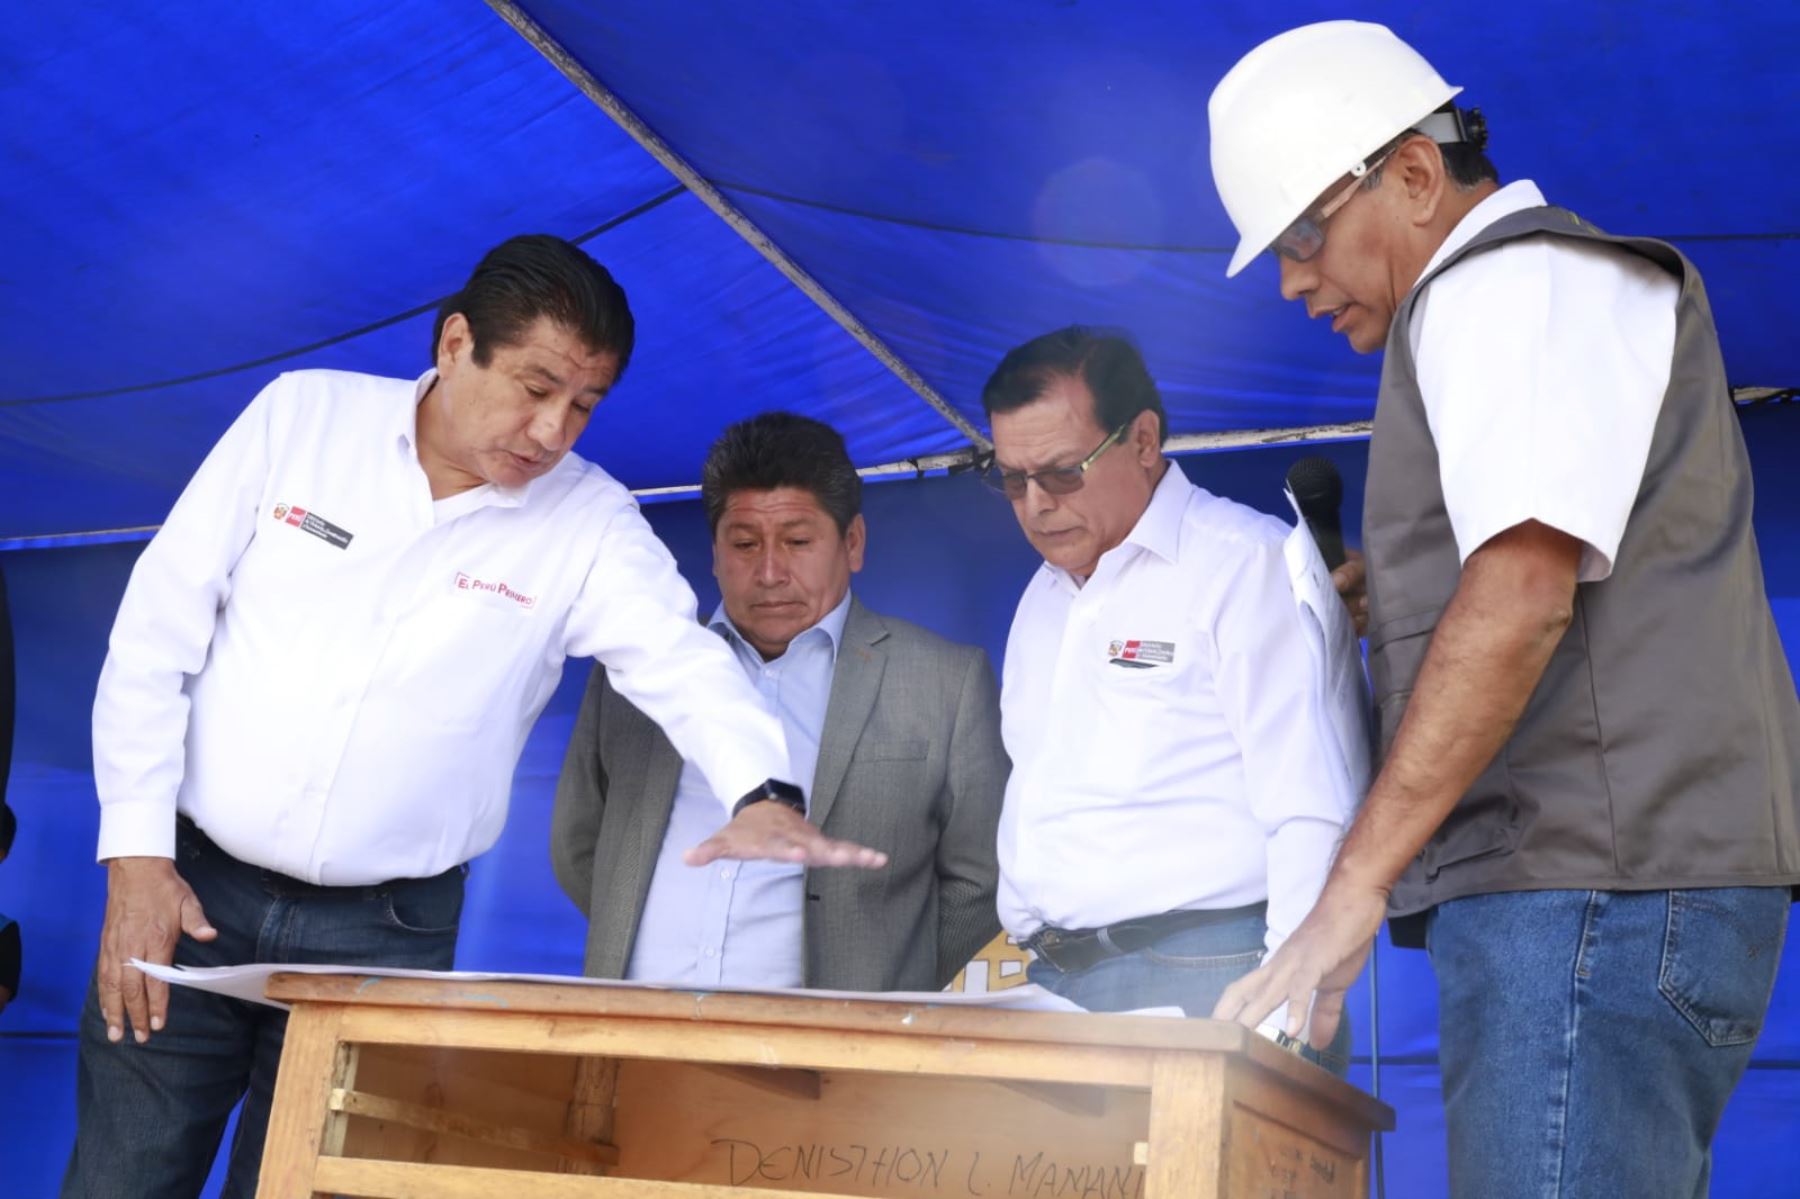 En enero se instalará planta de agua potable en comunidad de Tumilaca, en Moquegua, anunció el ministro de Vivienda, Rodolfo Yañez. ANDINA/Difusión